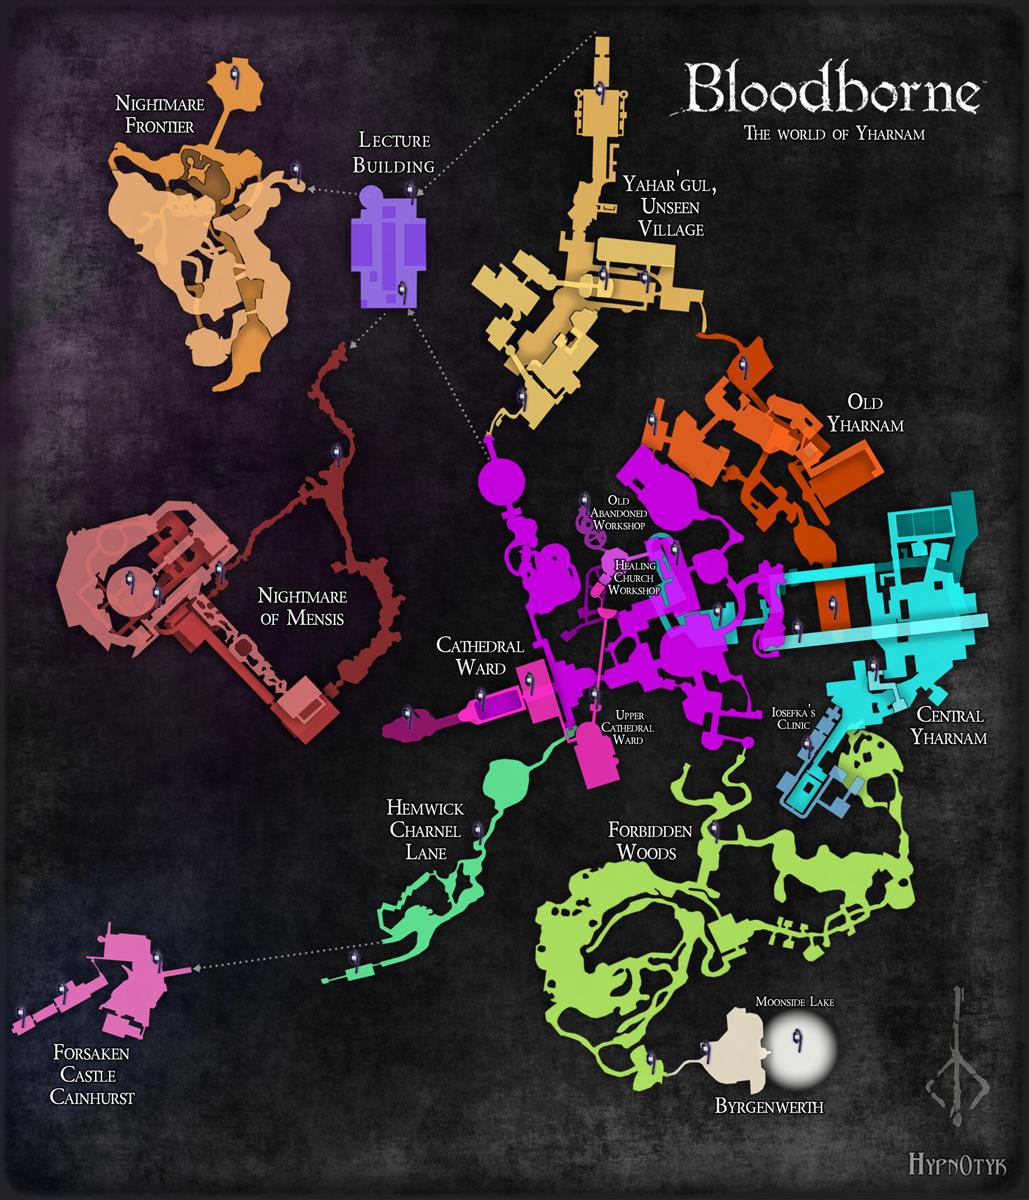 Jak prezentuje się mapa Bloodborne w całej okazałości?